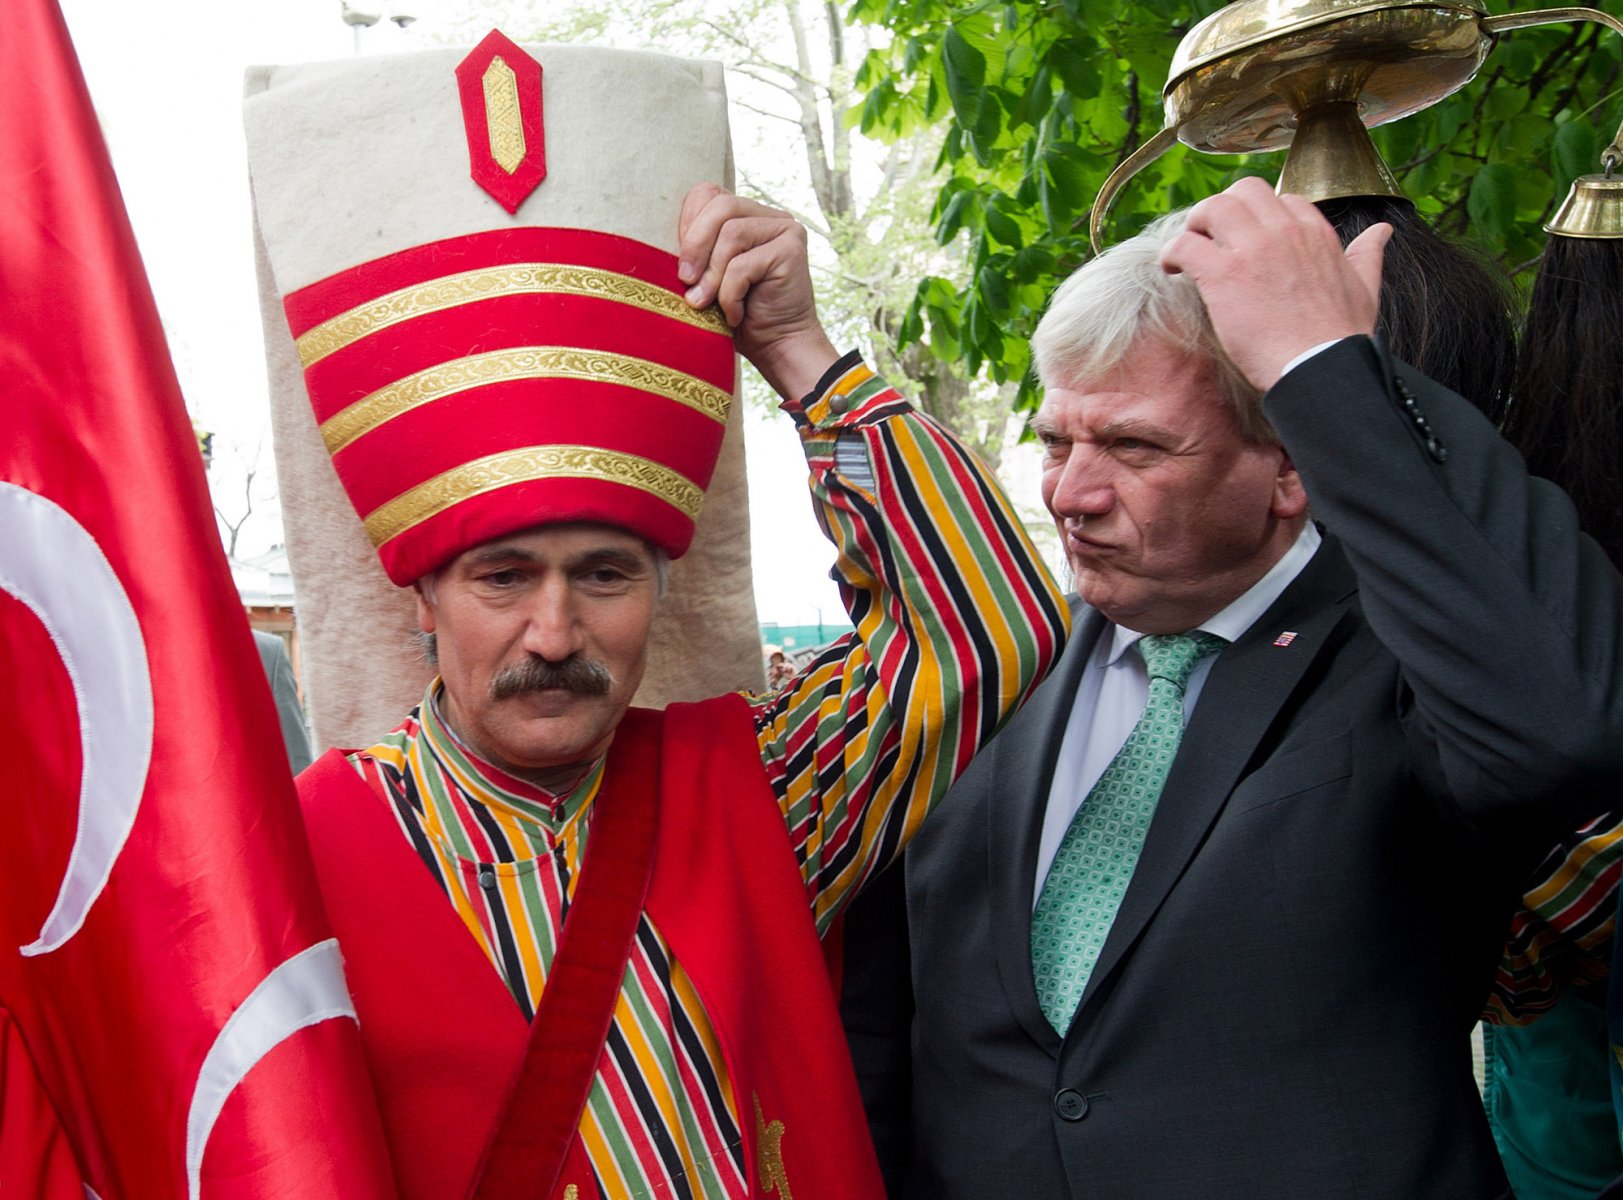 Neben einem osmanischen Trachtentänzer steht der hessische Ministerpräsident Volker Bouffier während einer Türkei-Reise in der hessischen Partnerregion Bursa. Foto: Boris Roessler/dpa  